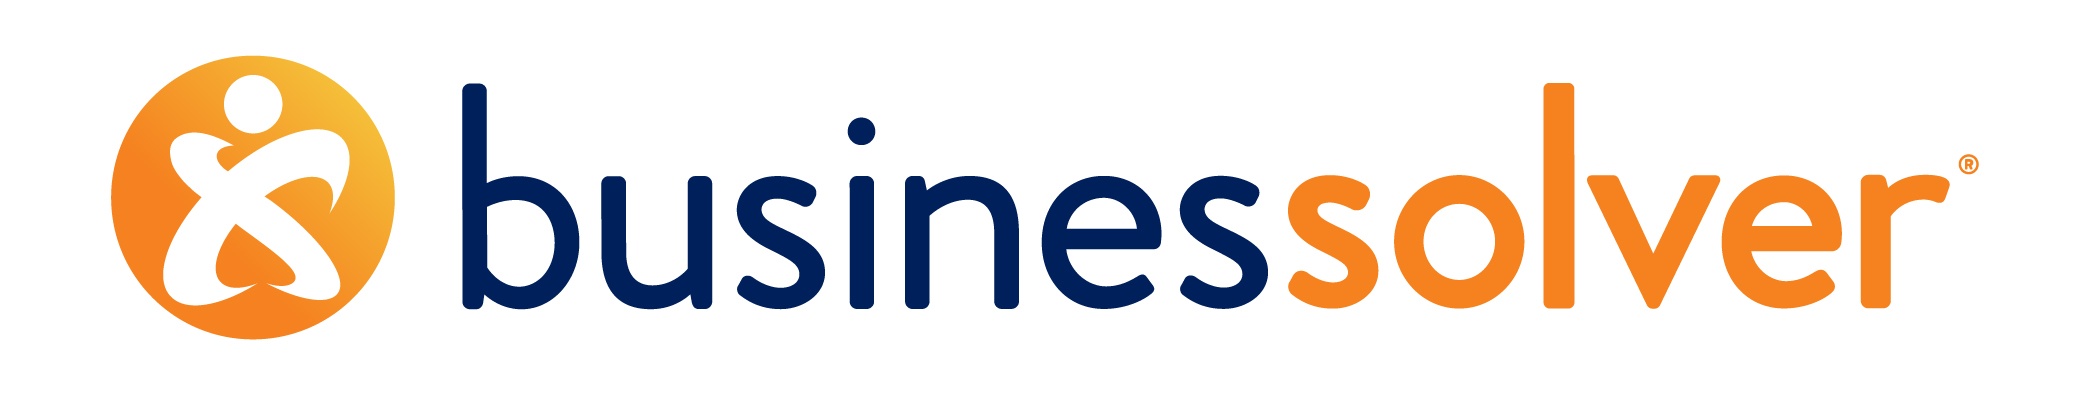 Businessolver_Logo